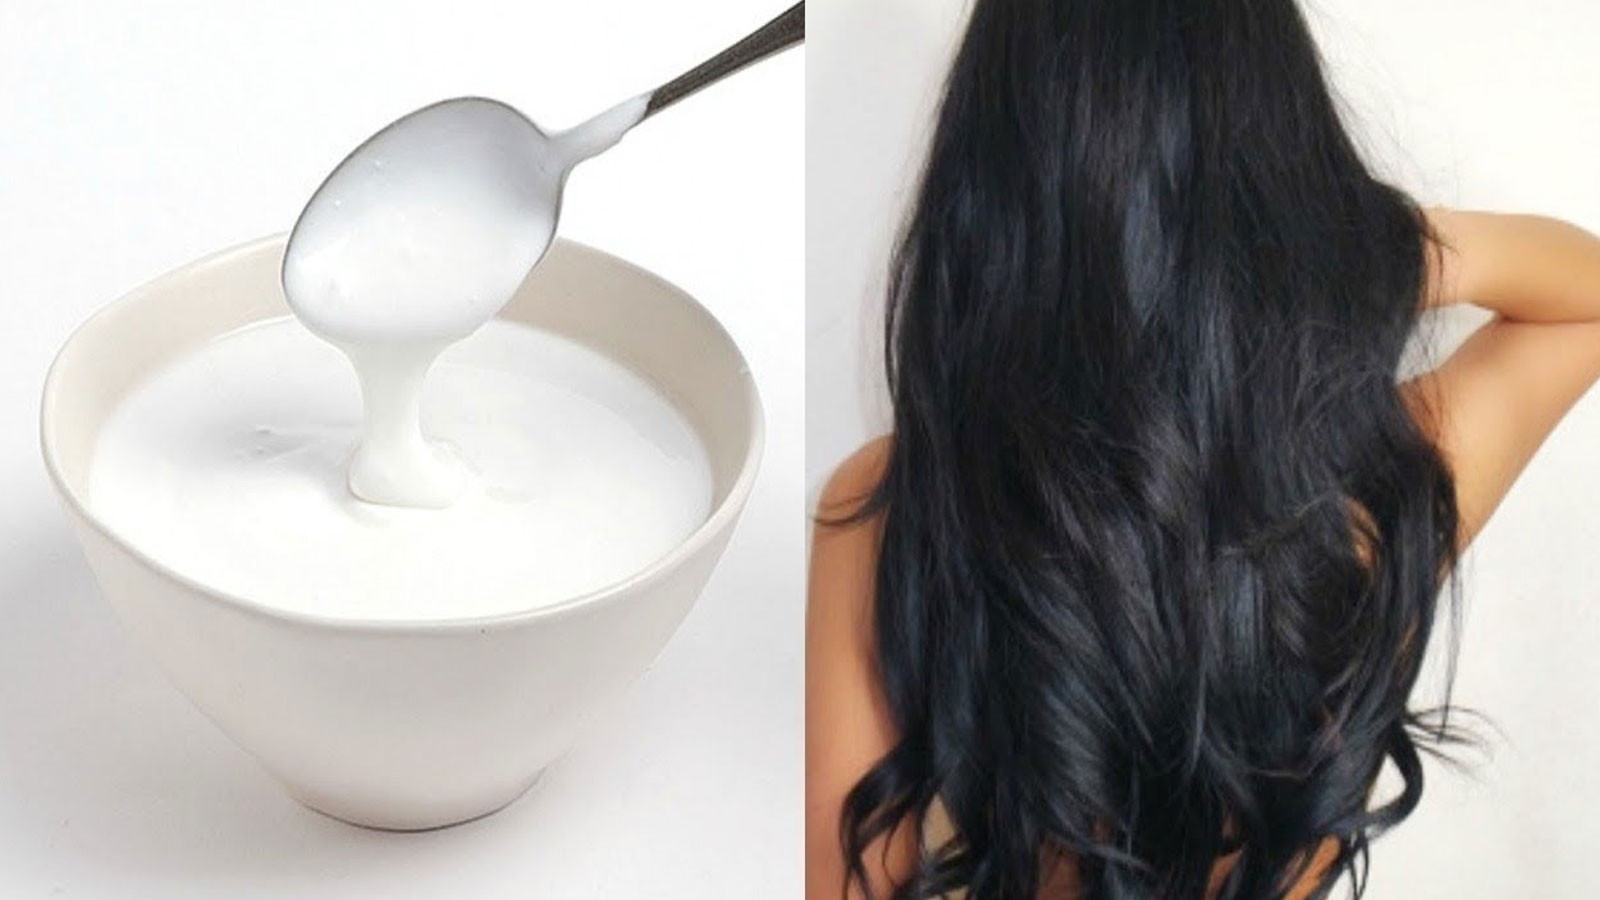 Yoğurdu saçlarınıza doğrudan sürebilir yahut zeytinyağı, yumurta, badem yağı gibi yağlar ile karıştırıp bu şekilde de kullanabilirsiniz.